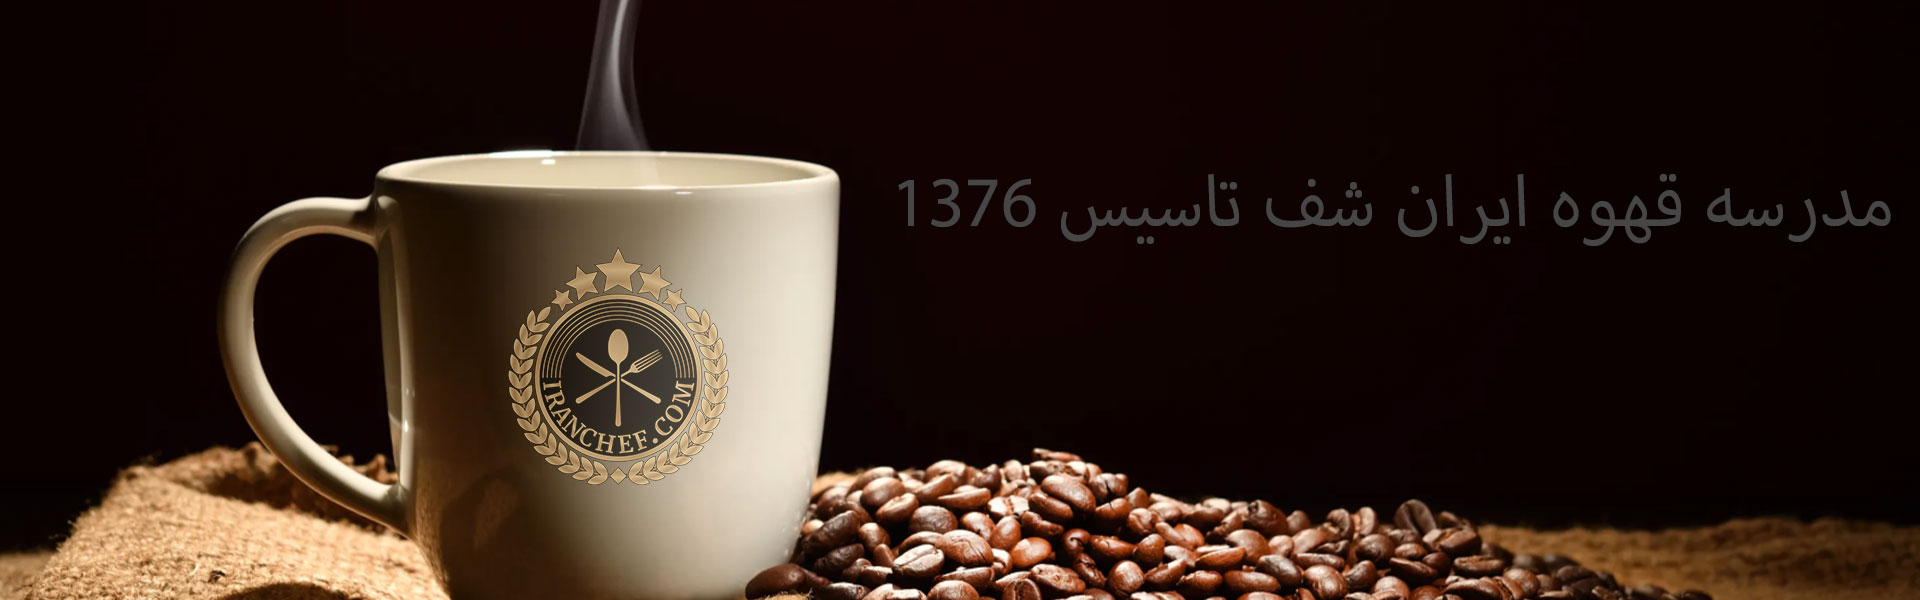 هر نوشیدنی سیاه قهوه نیست-کافه صدف Sadaf Cafe